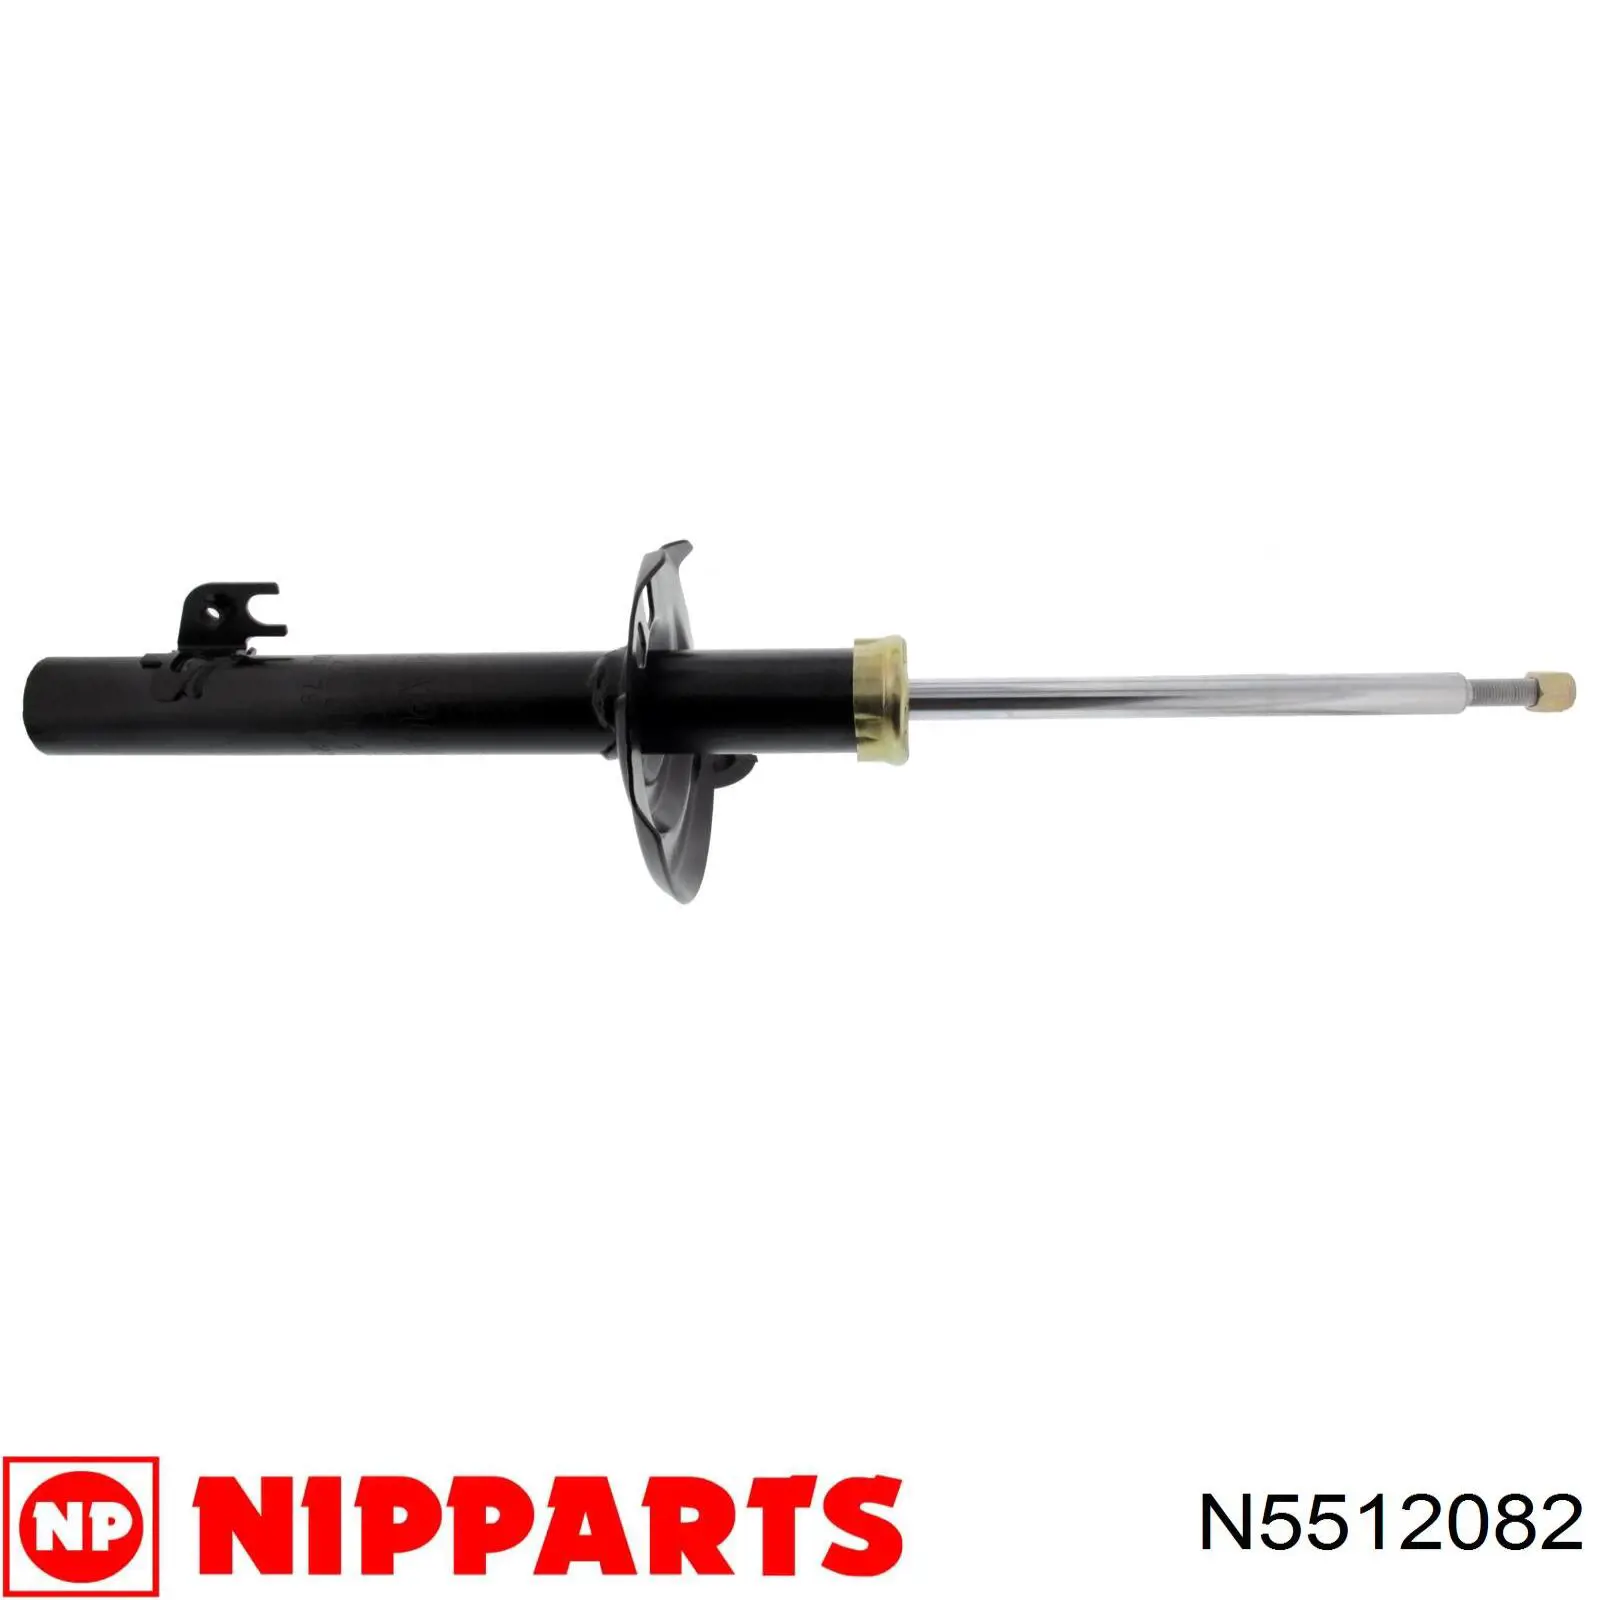 N5512082 Nipparts amortiguador delantero derecho